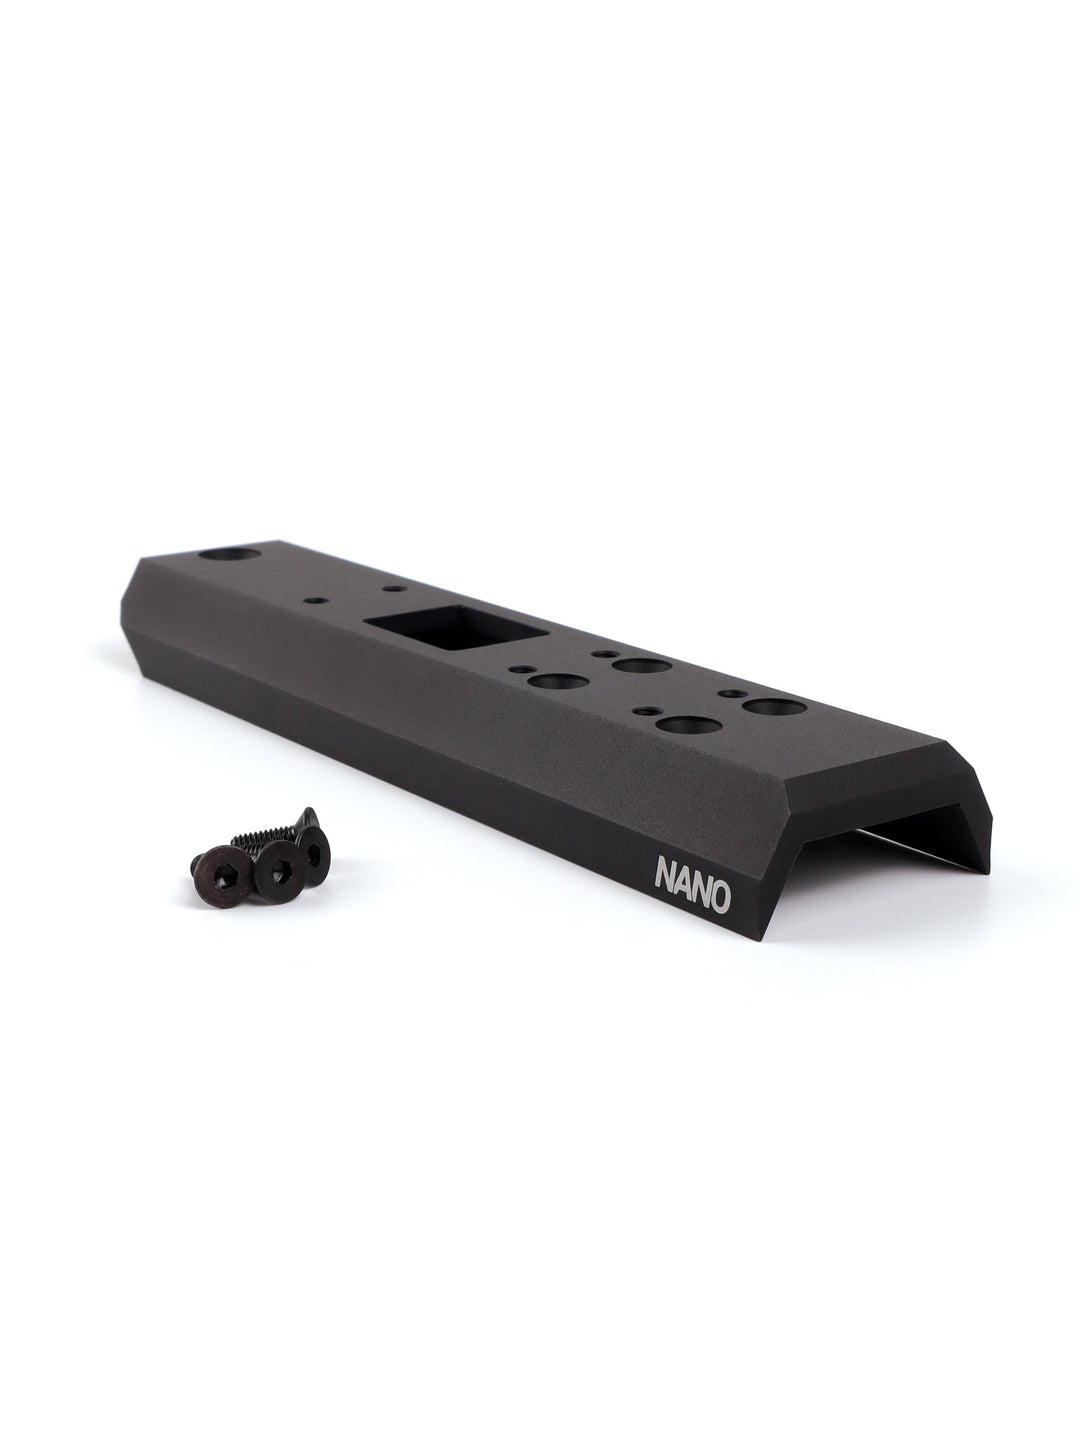 B-stock: Core Mount /Nano Carbine/